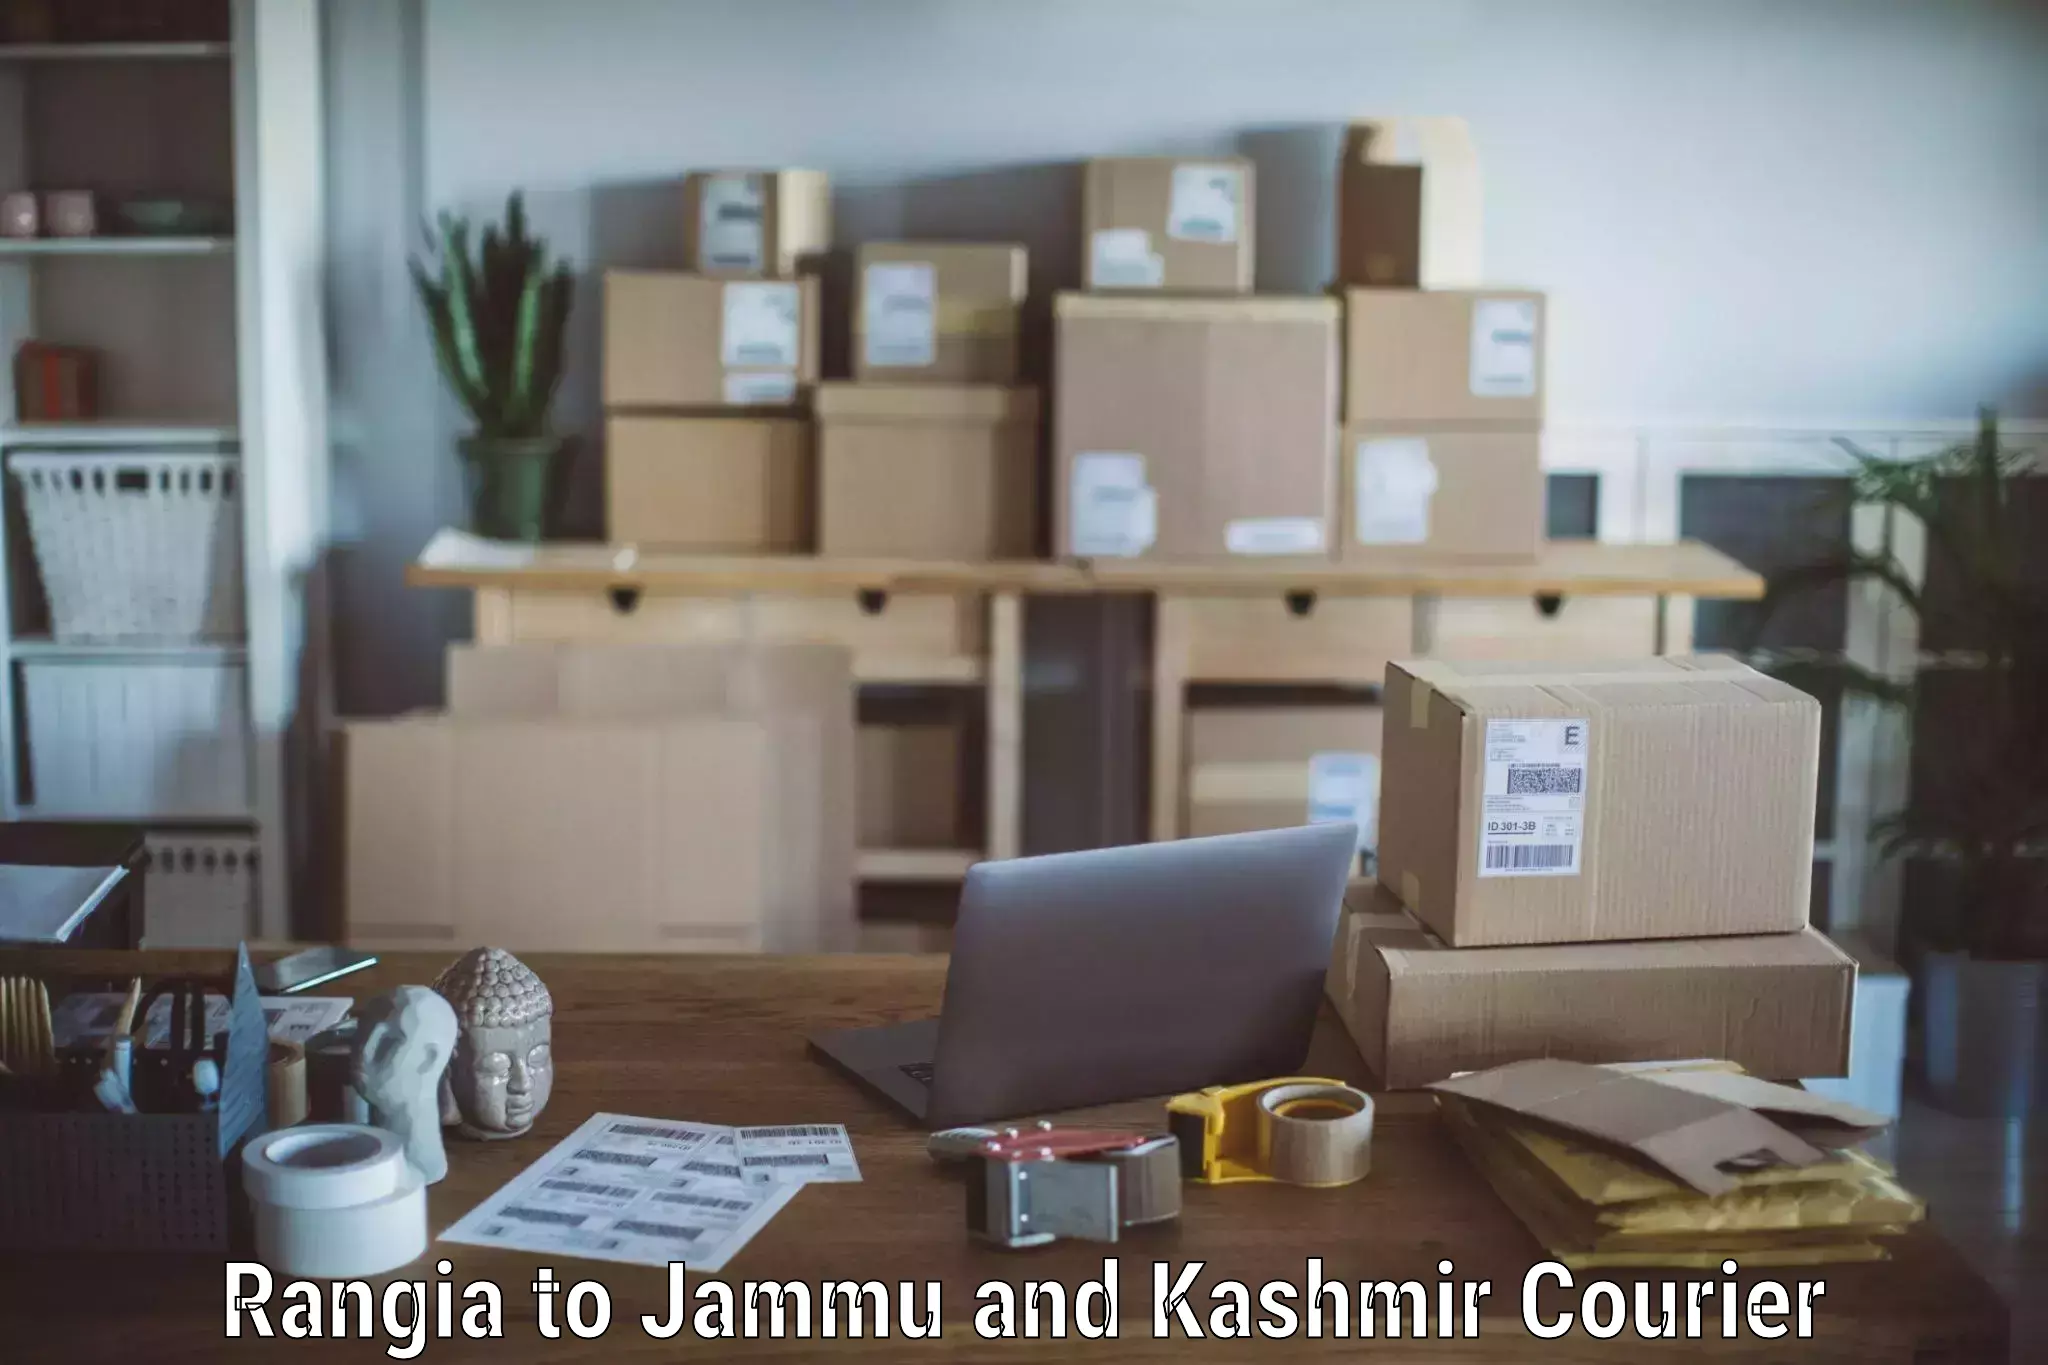 Quality relocation services Rangia to Srinagar Kashmir